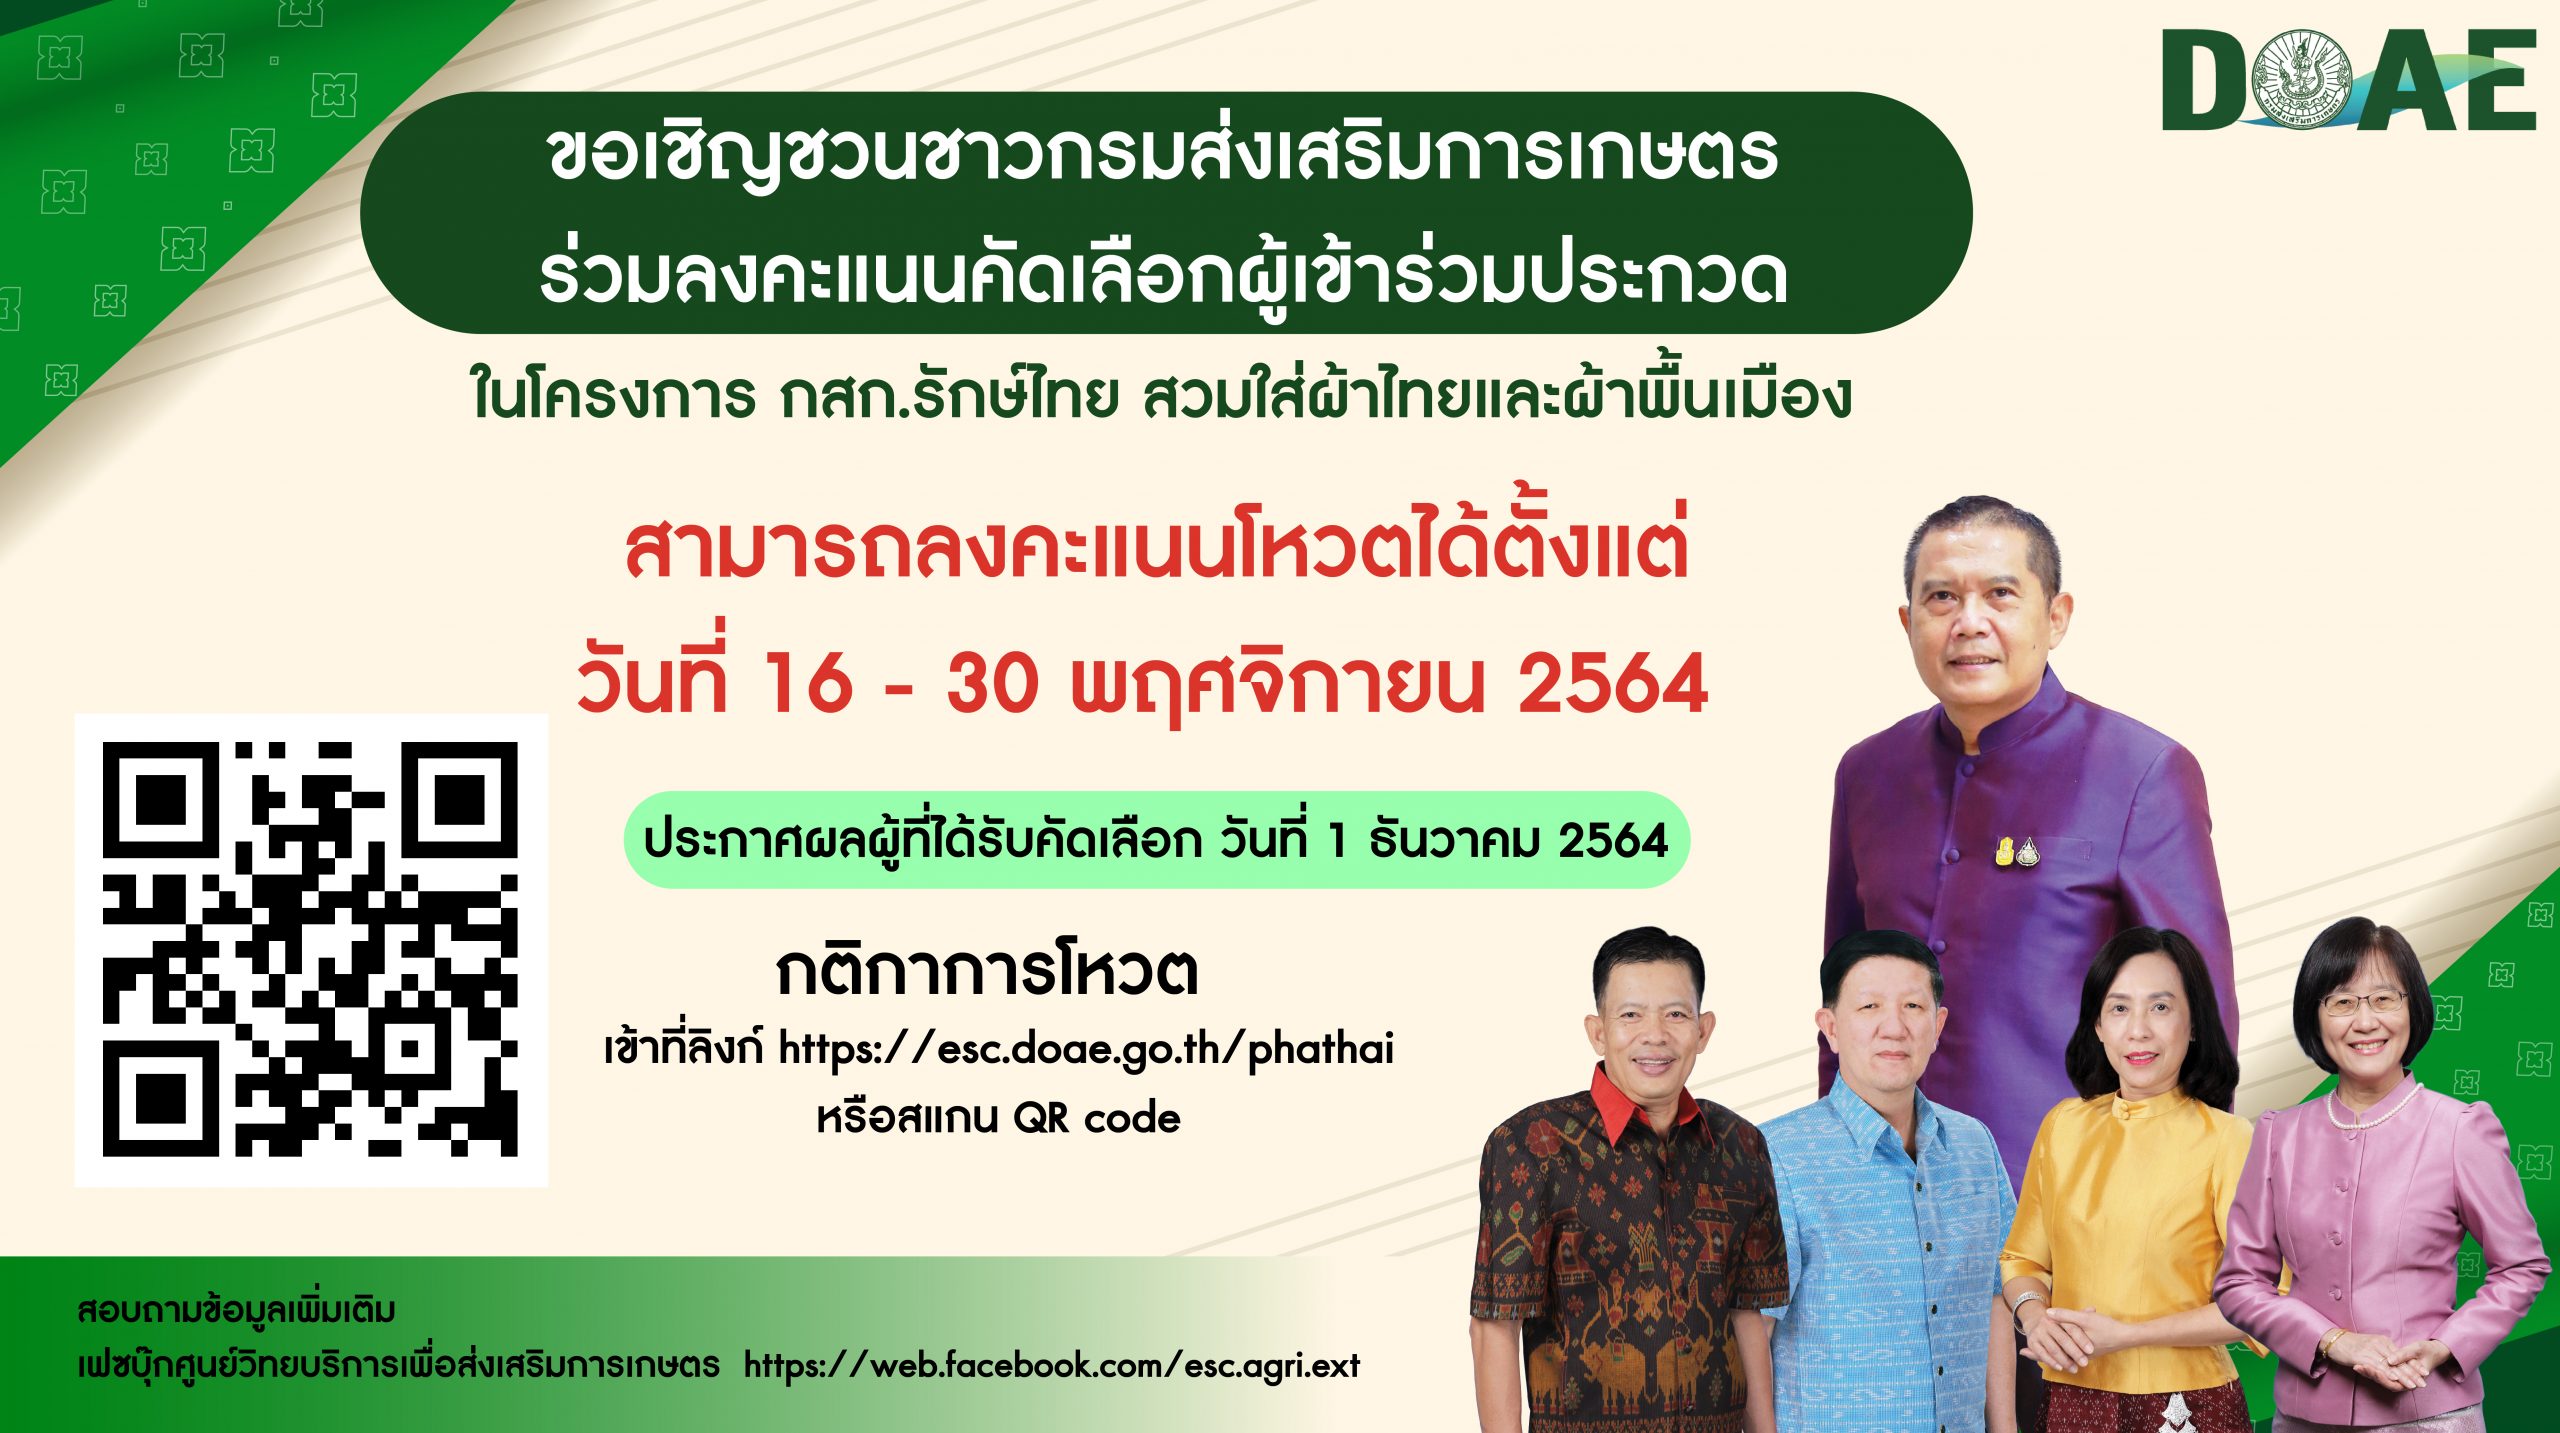 ร่วมลงคะแนนคัดเลือกผู้เข้าร่วมประกวดในโครงการ กสก.รักษ์ไทย สวมใส่ผ้าไทยและผ้าพื้นเมือง